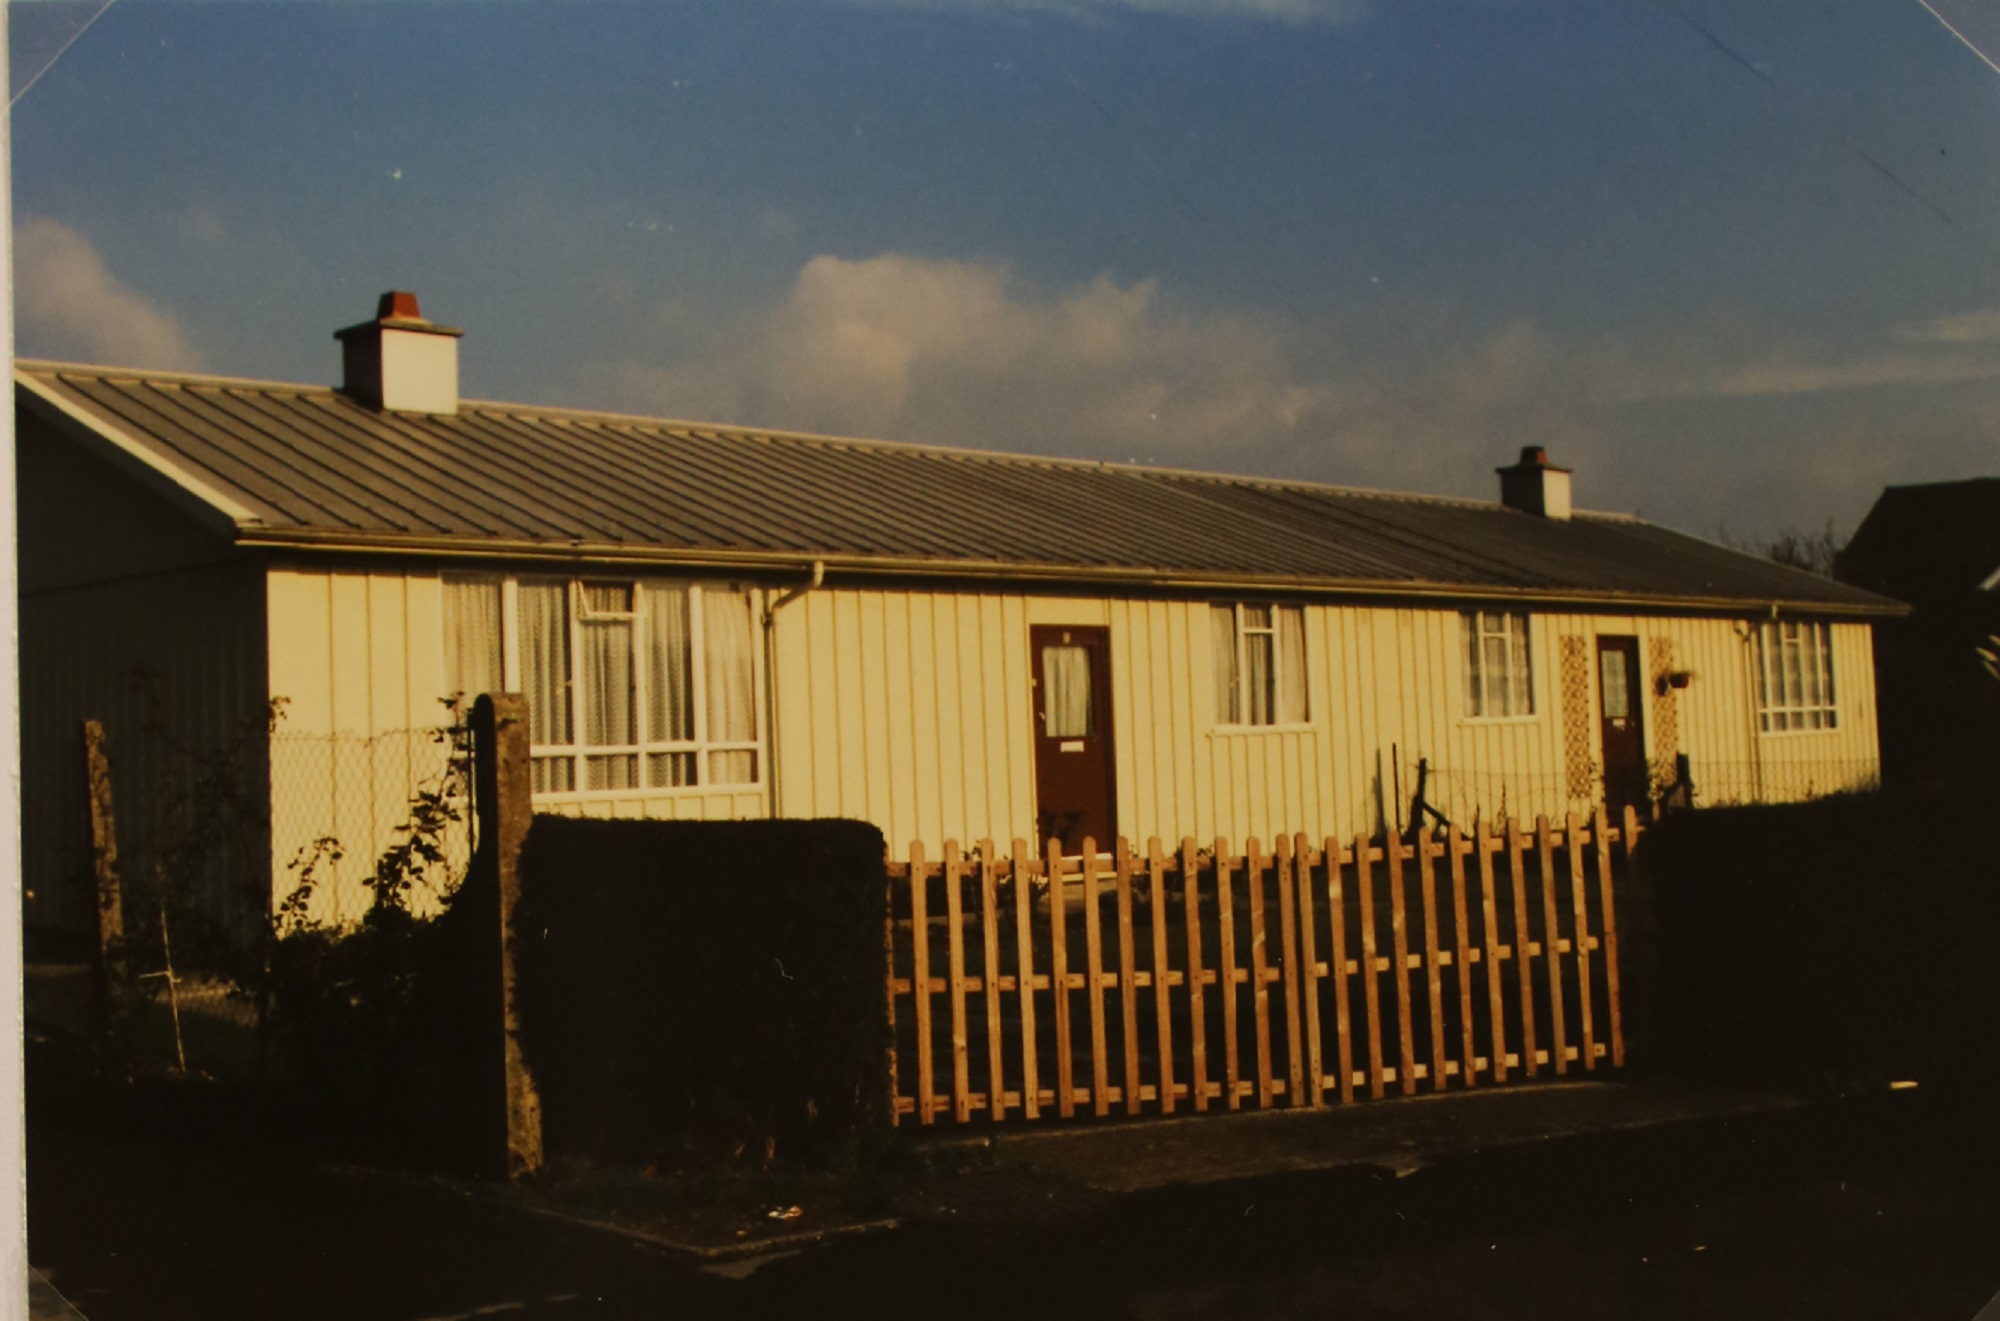 Hawksley BL8 semi-detached aluminium bungalow